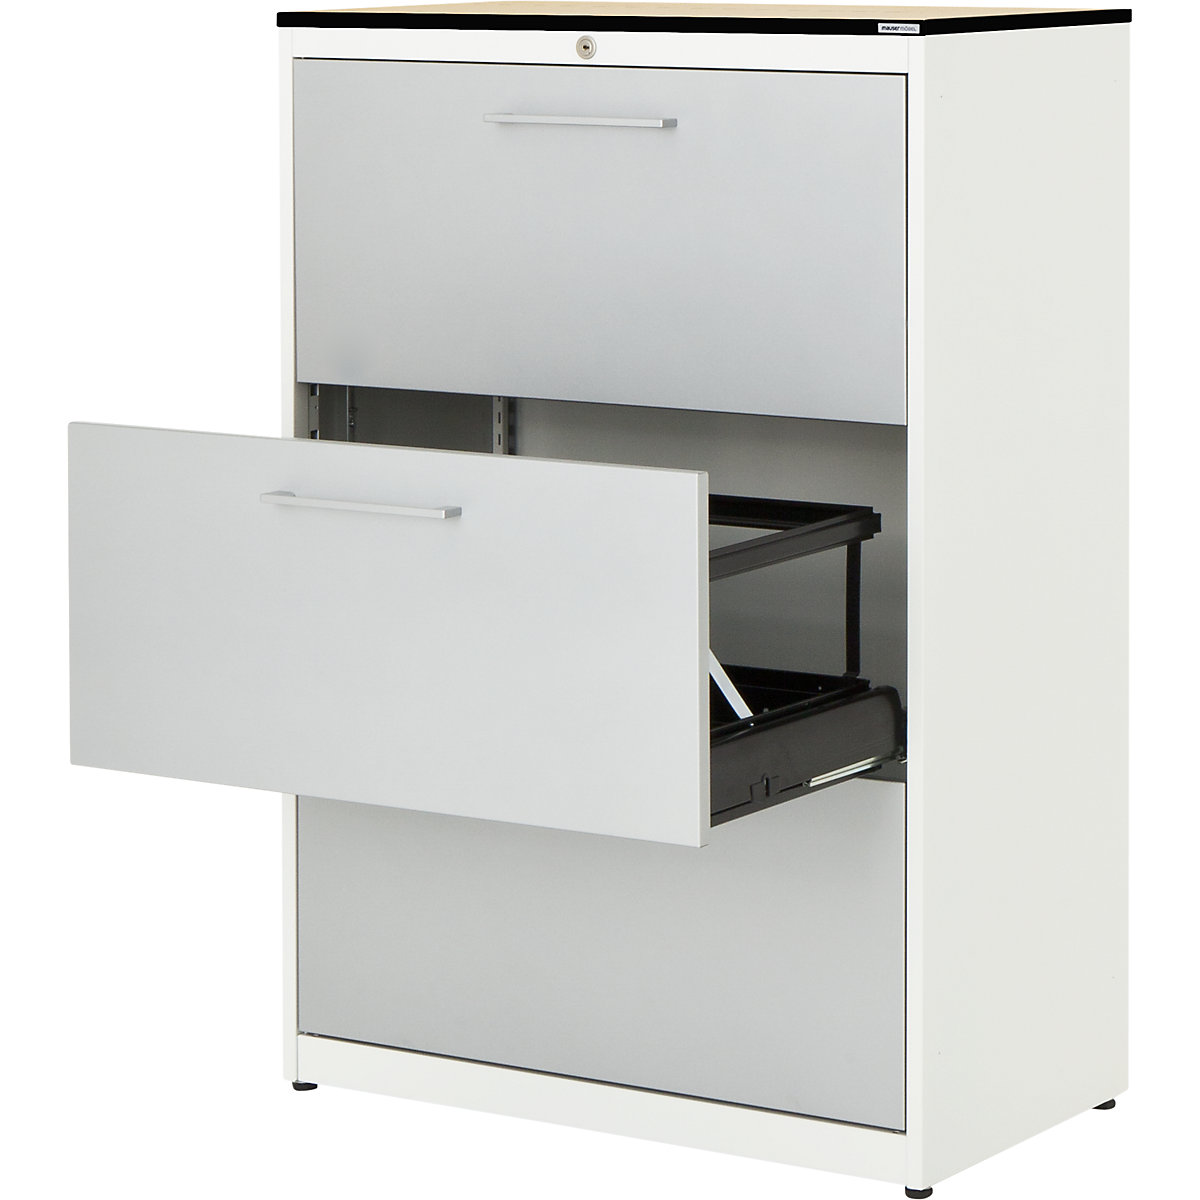 Függő irattartós szekrény – mauser, HPL kompozitlap, 3 fiók, 2 pályás, csapódásgátlóval, tiszta fehér / fehéralumínium / juhar-3